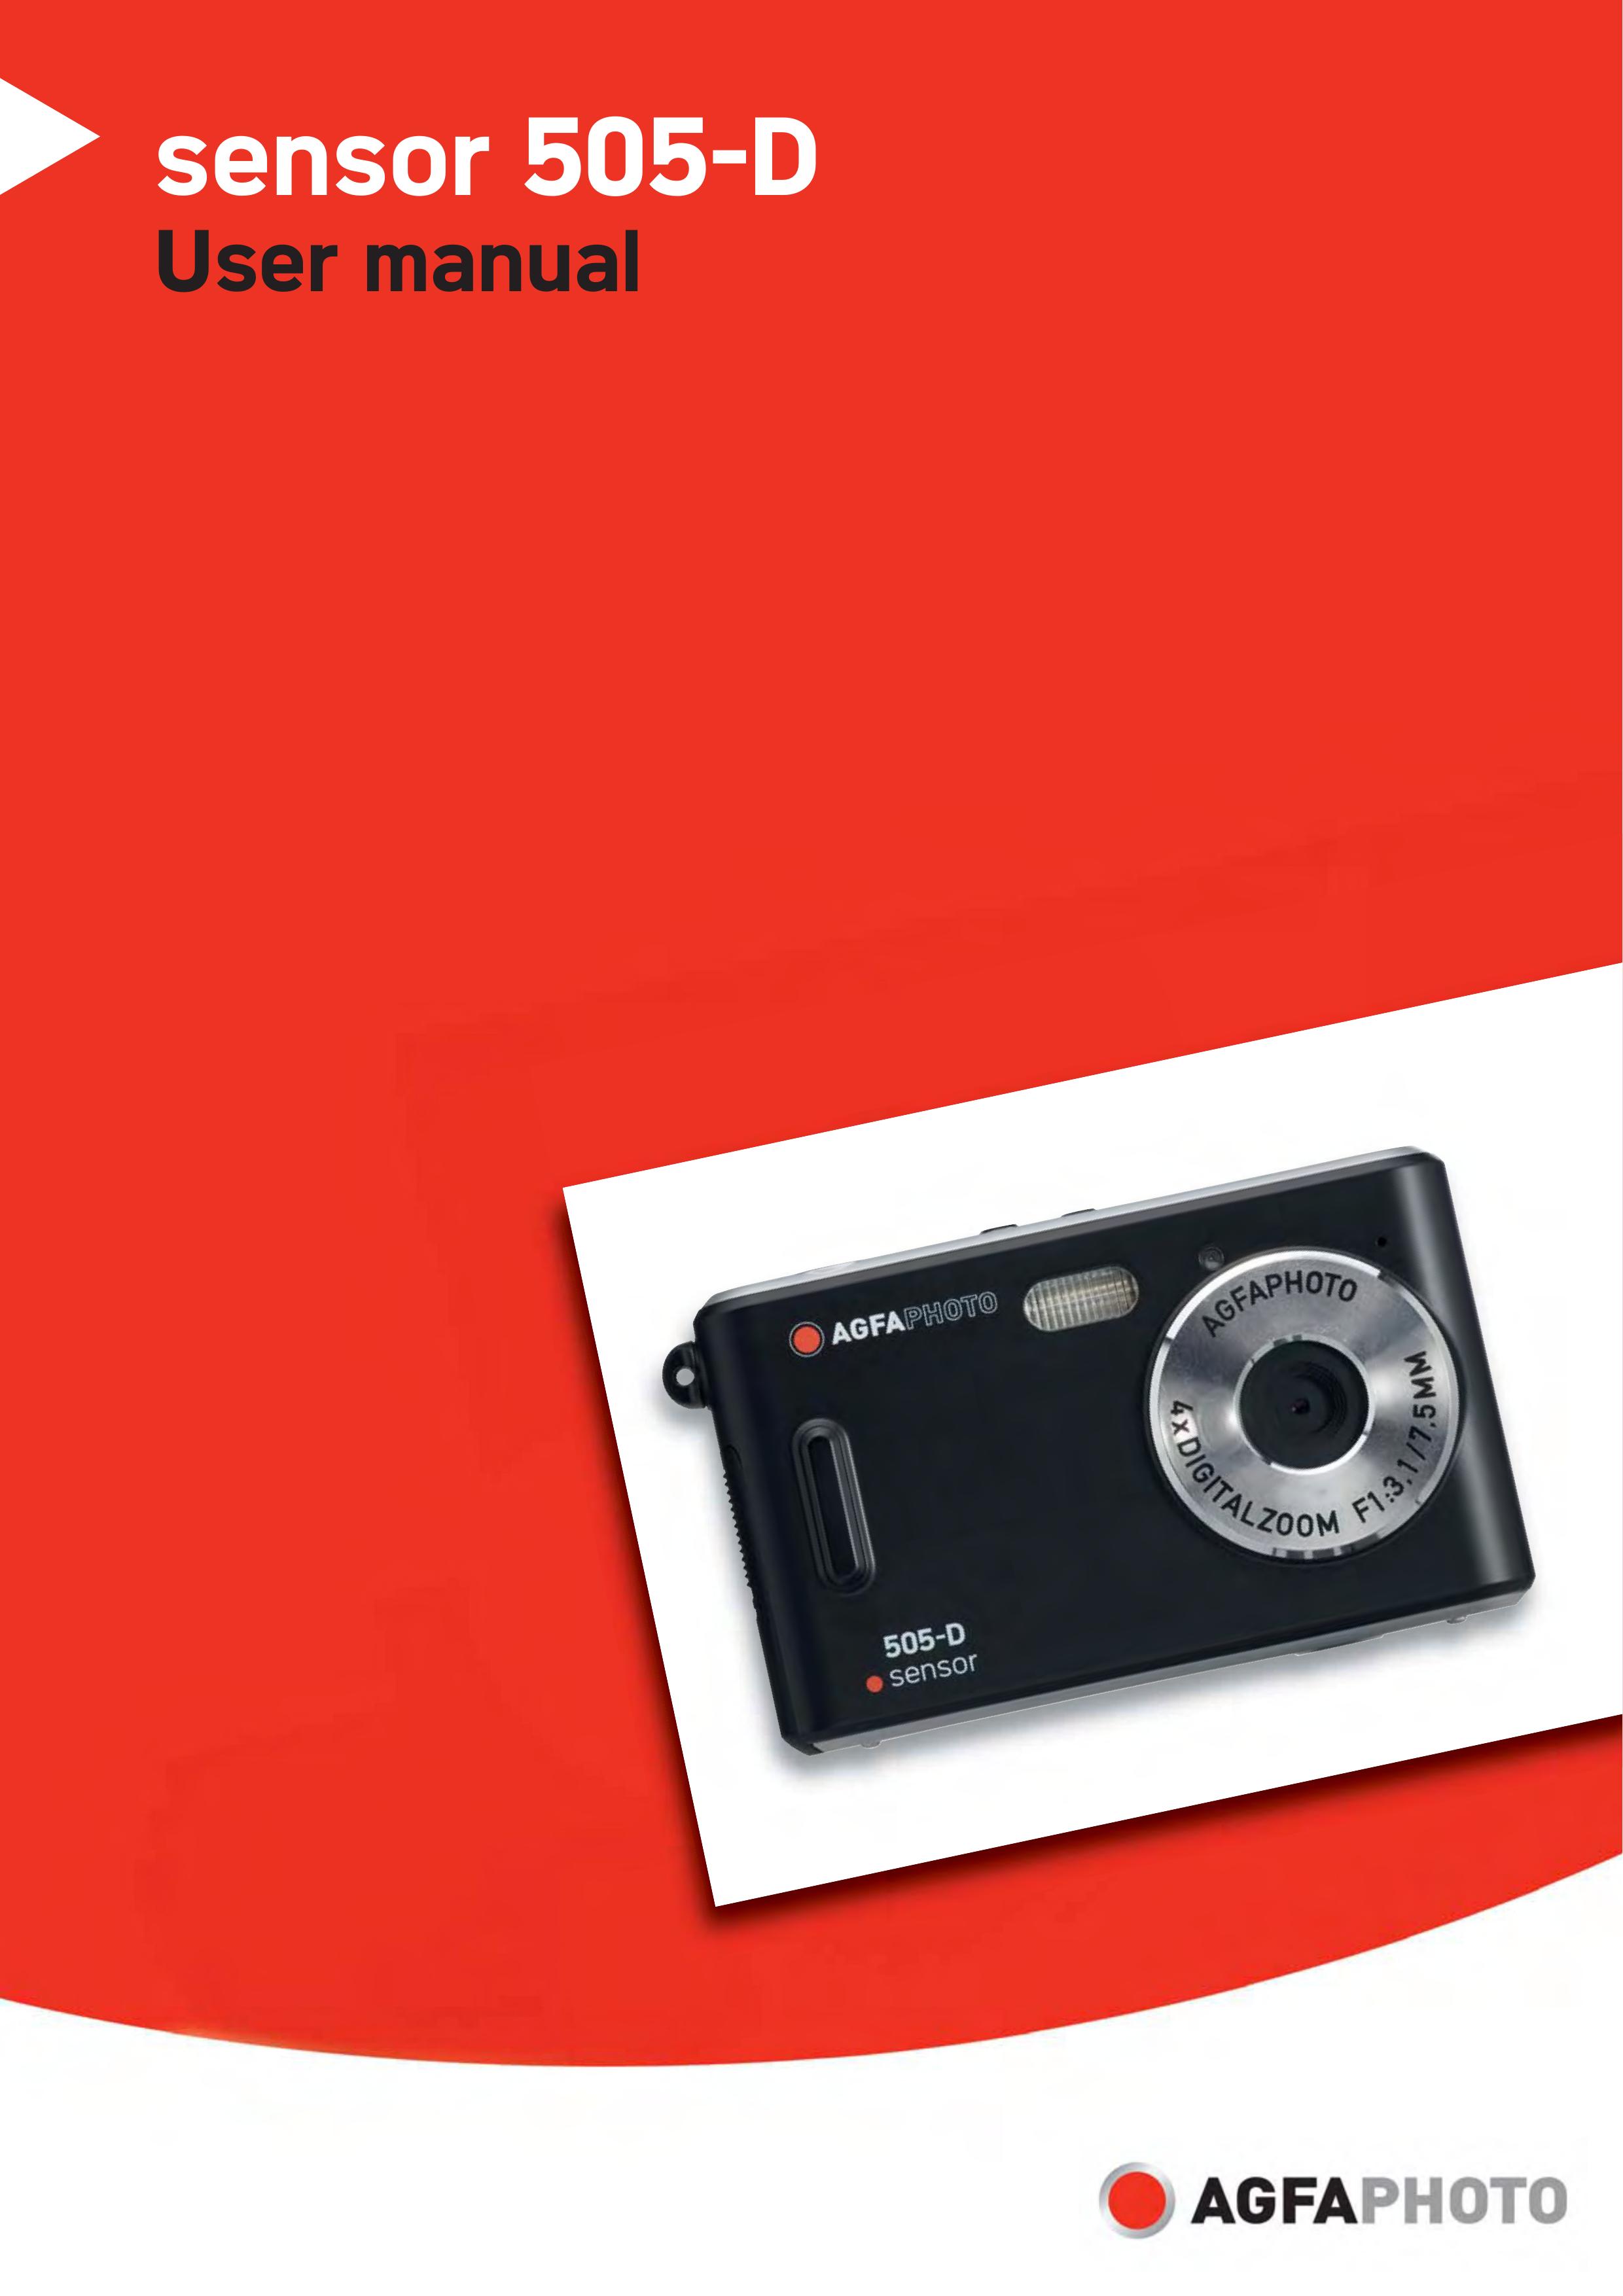 VistaQuest sensor 505-D Digital Camera User Manual